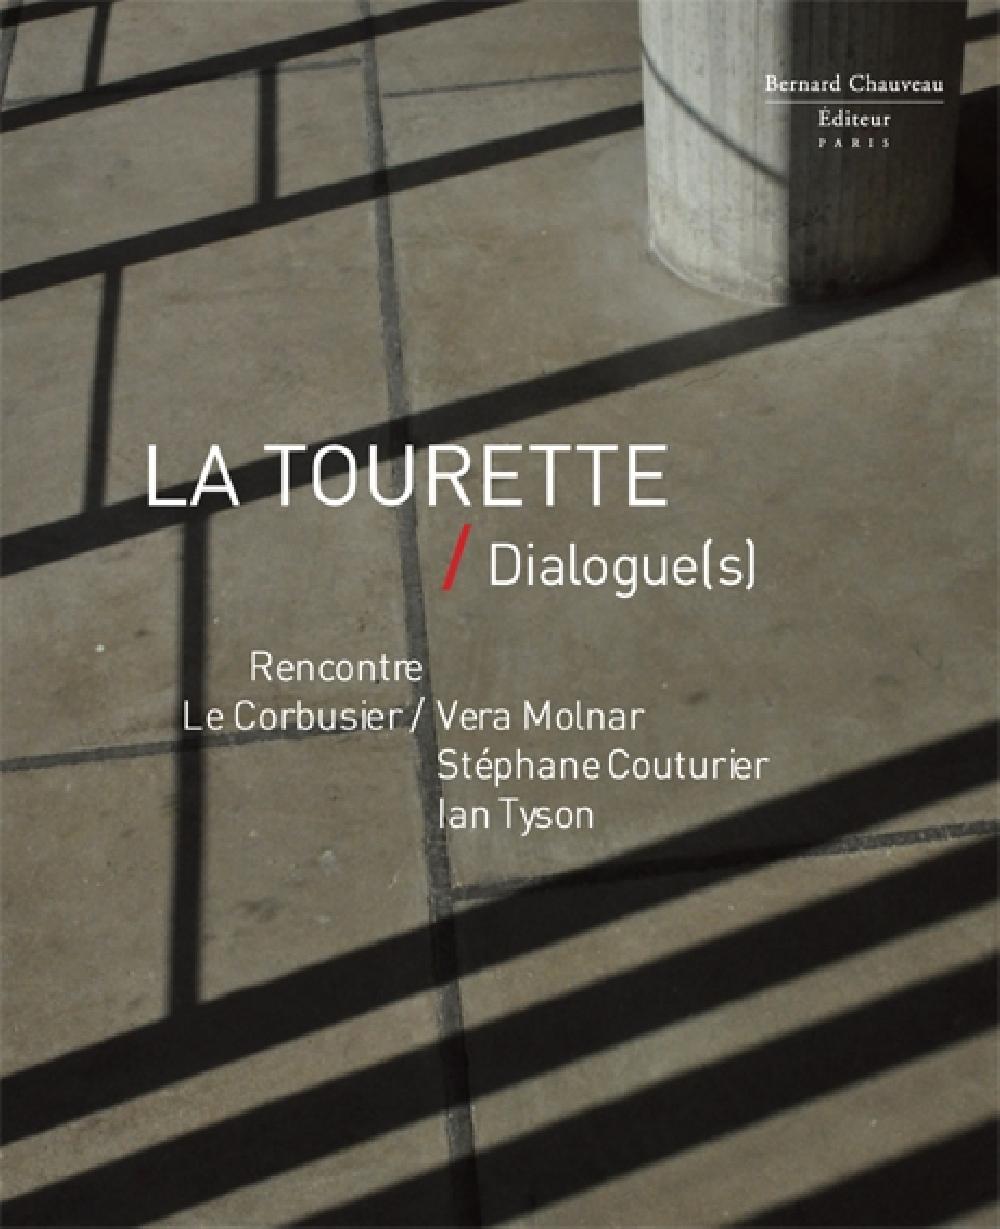 La Tourette / Dialogue(s)